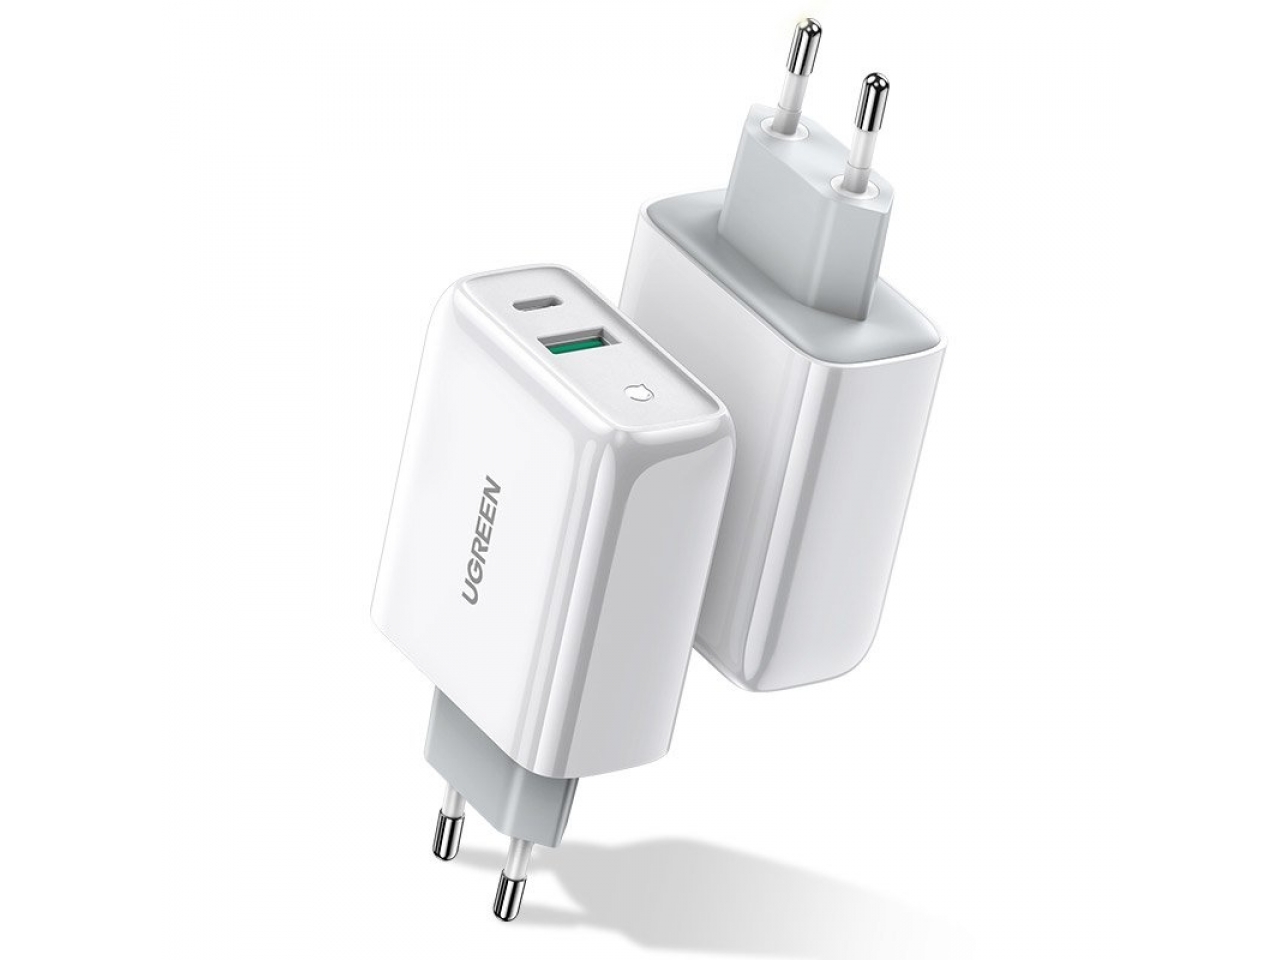 Dual USB Kfz-Adapter 2.4A mit Lightning Kabel kompatibel mit Apple iPhone  und iPad